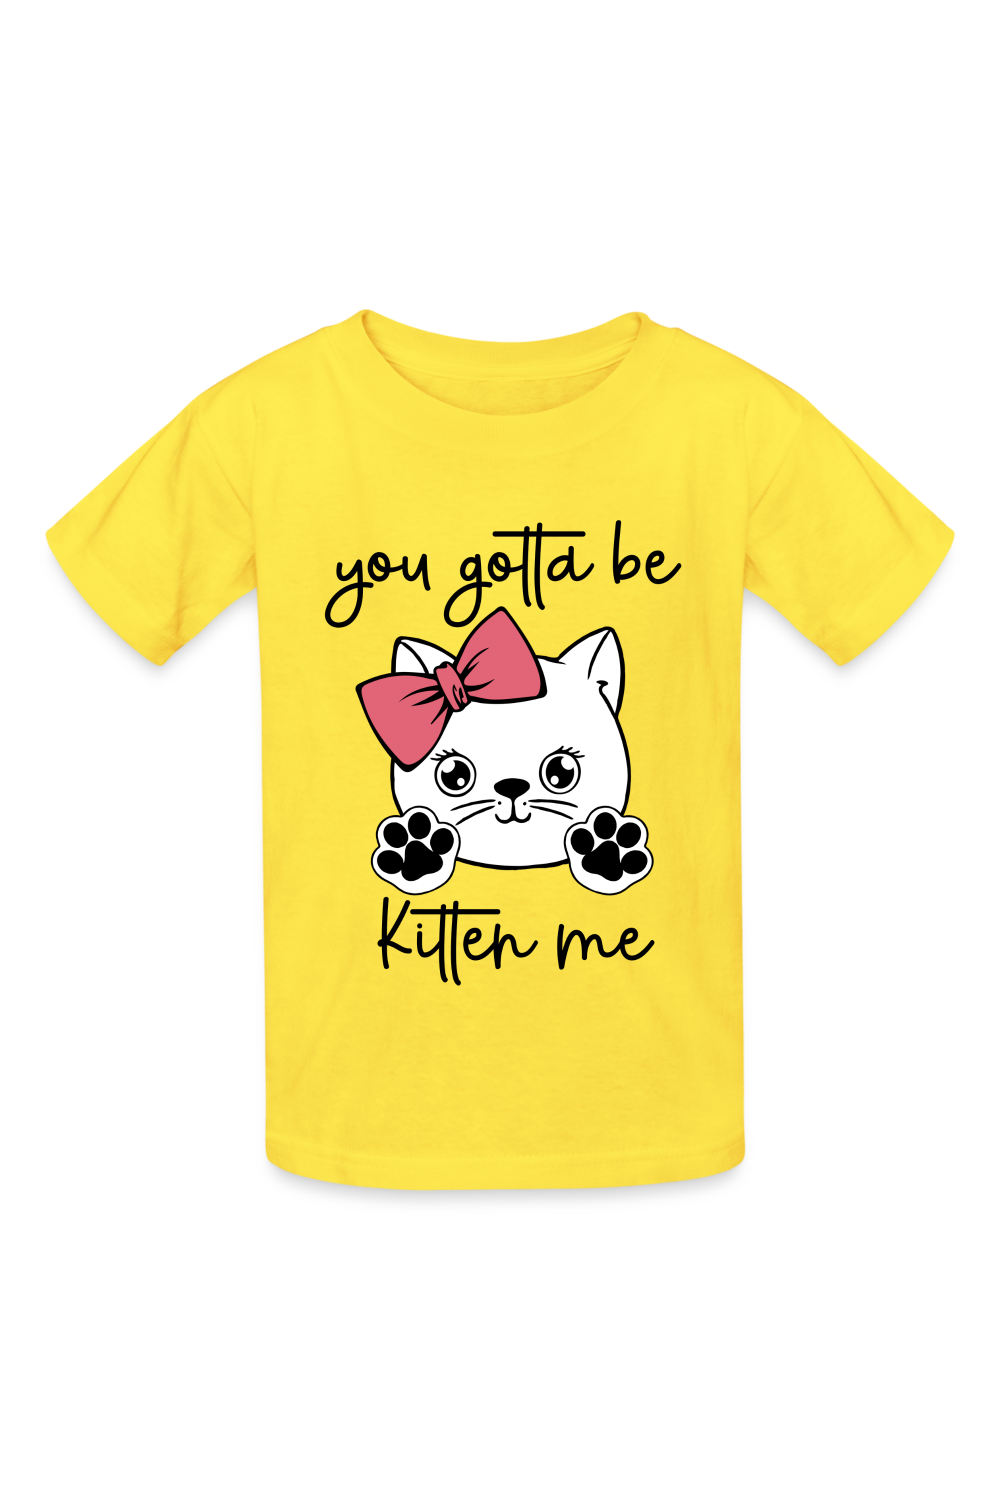 Girls Kitten Me Short Sleeve T-Shirt - yellow - NicholesGifts.onlines